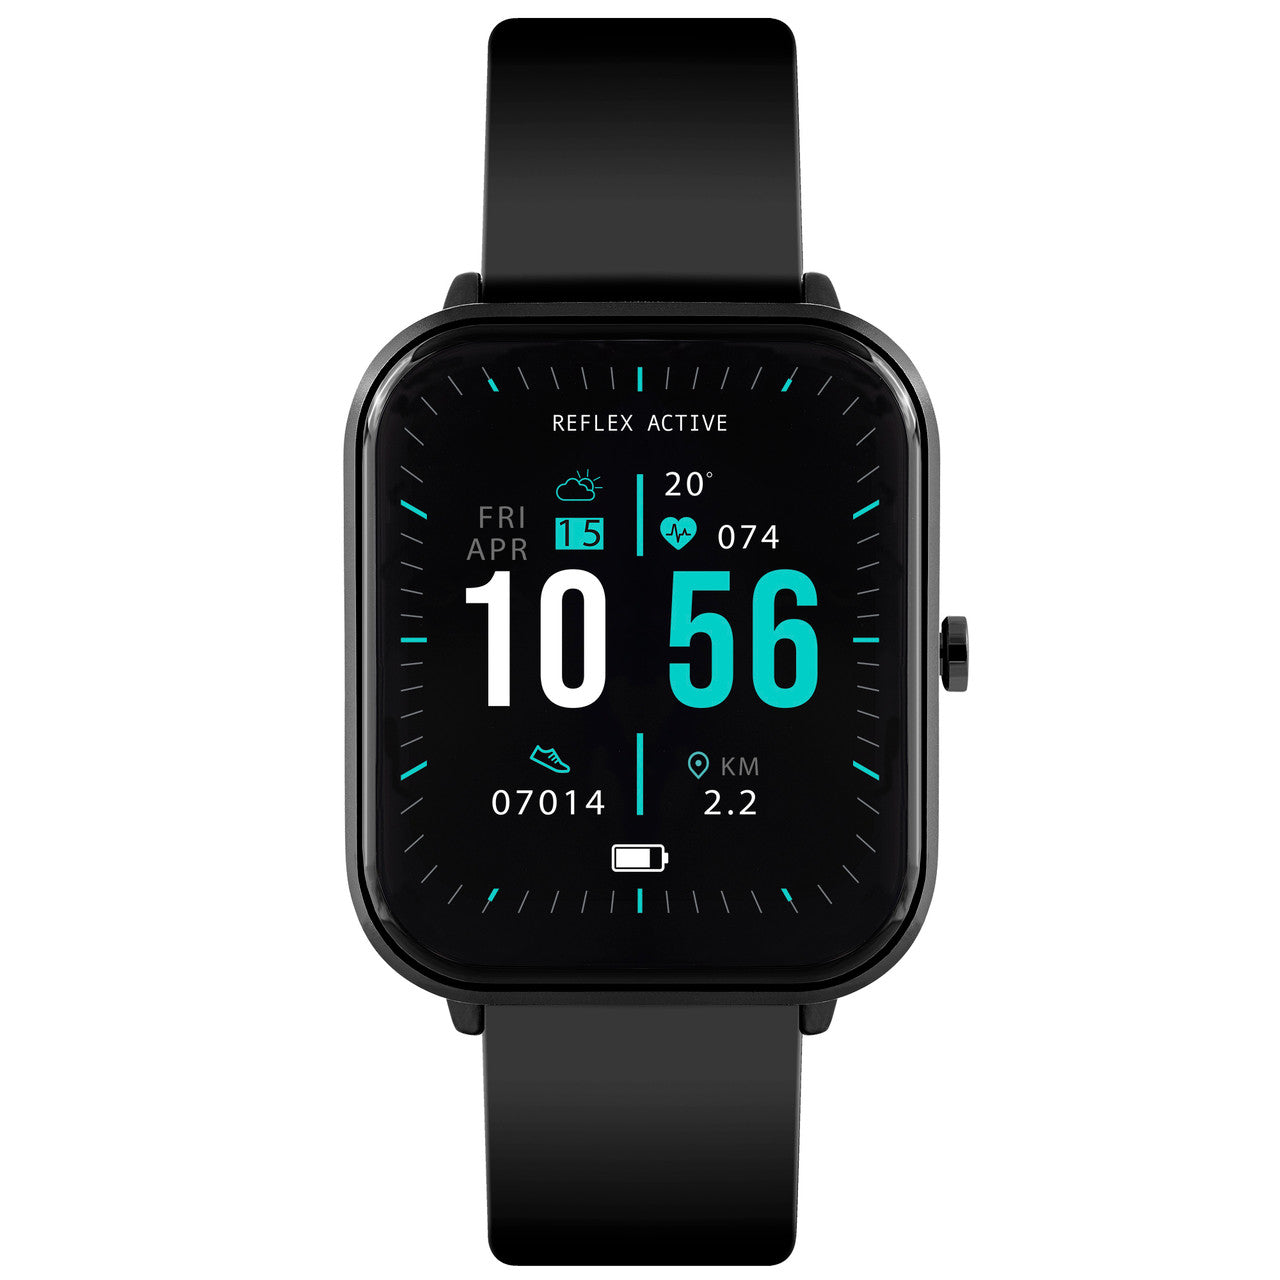 Reflex Active Series 15 Smart Watch